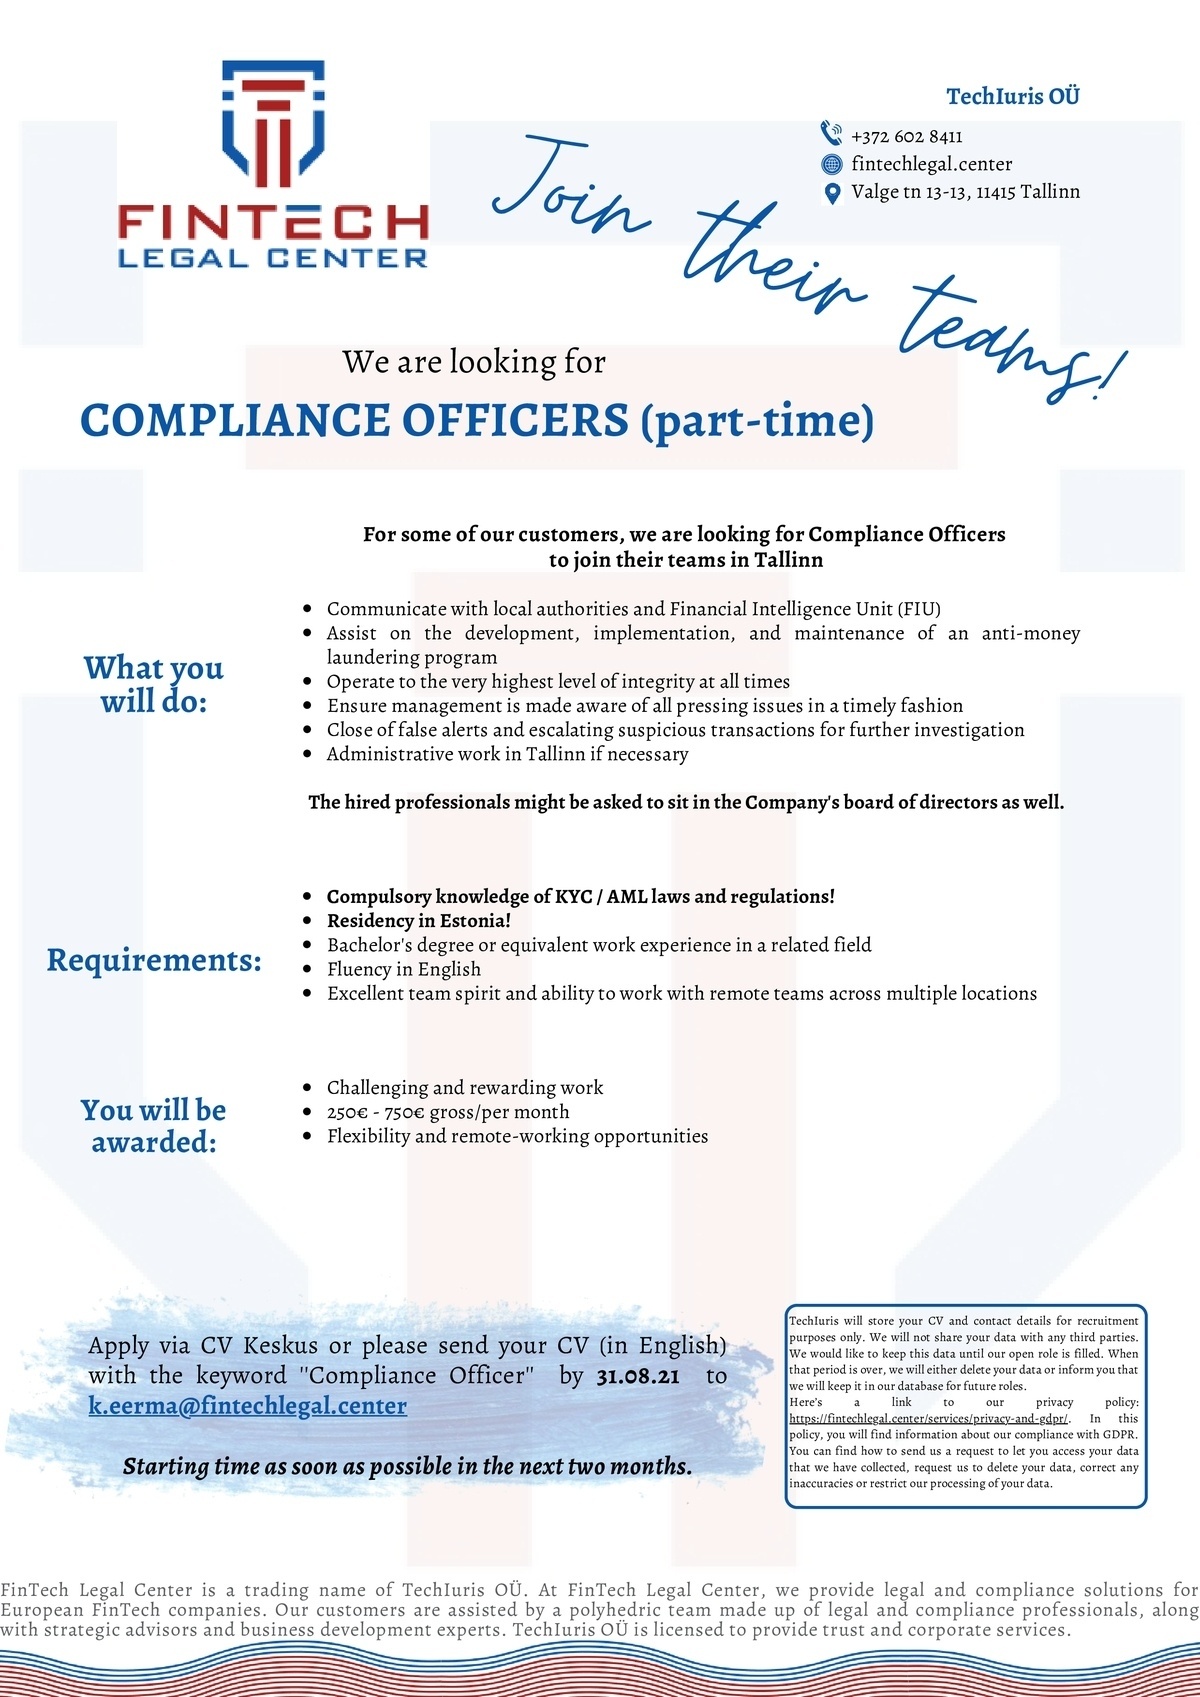 TechIuris OÜ Compliance Officers (part-time)